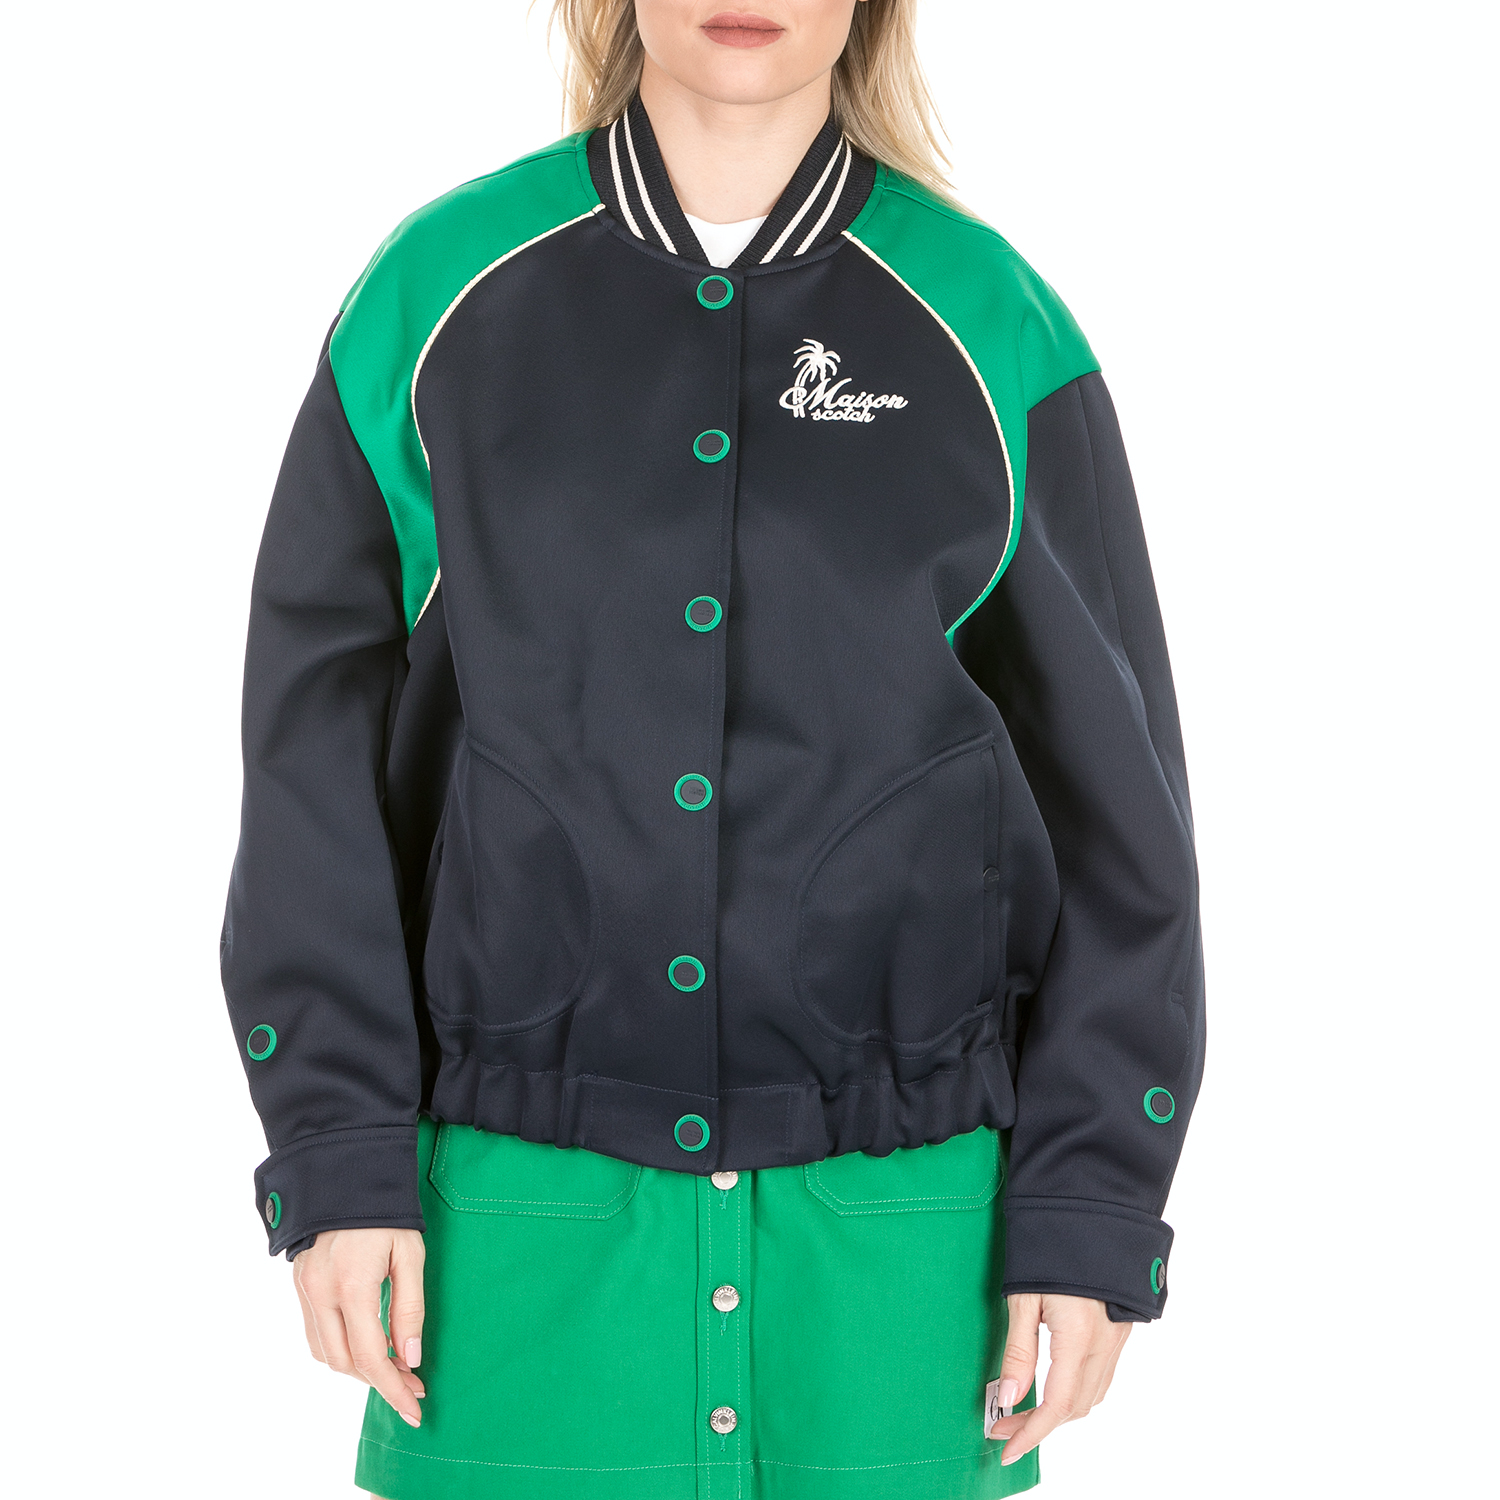 Γυναικεία/Ρούχα/Πανωφόρια/Τζάκετς SCOTCH & SODA - Γυναικείο bomber jacket SCOTCH & SODA μπλε πράσινο